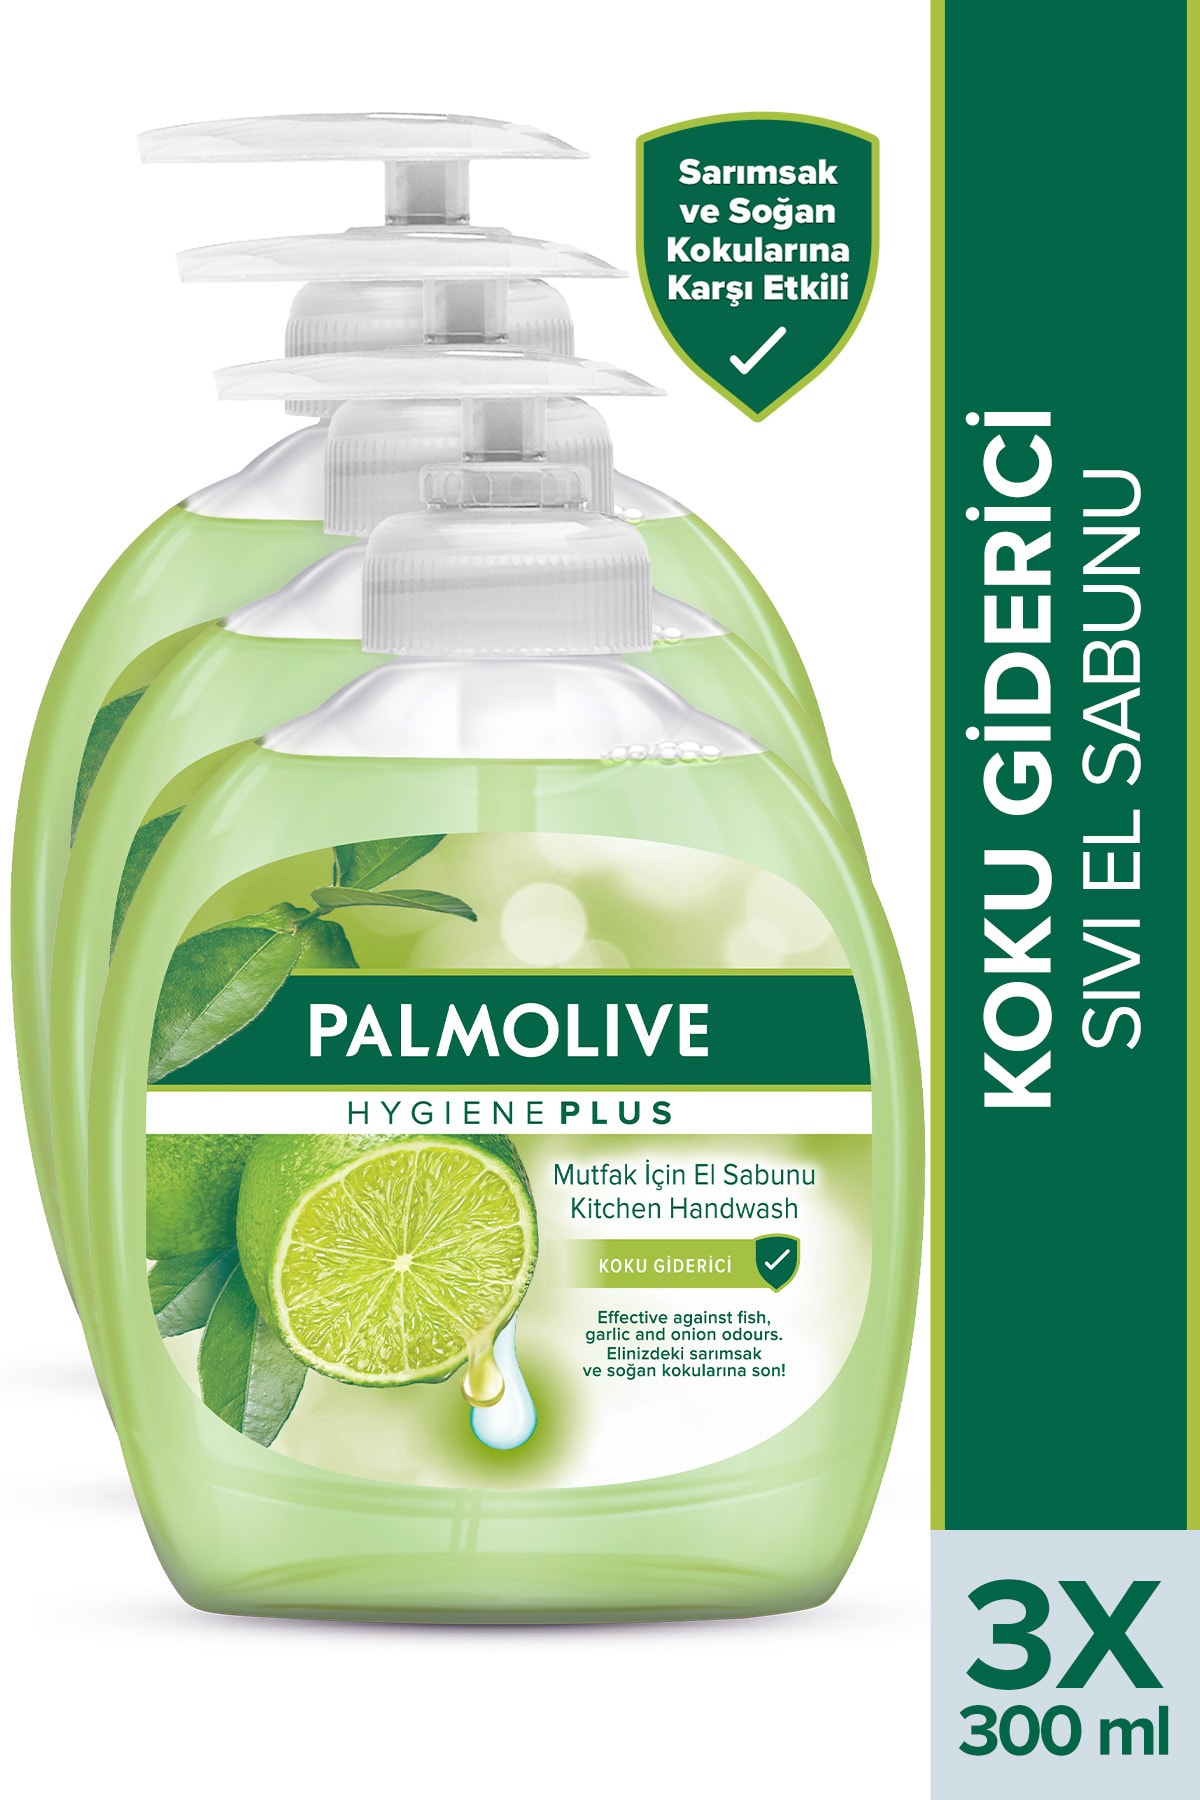 Palmolive Mutfak için Koku Giderici Sıvı El Sabunu 3 X 300 ml